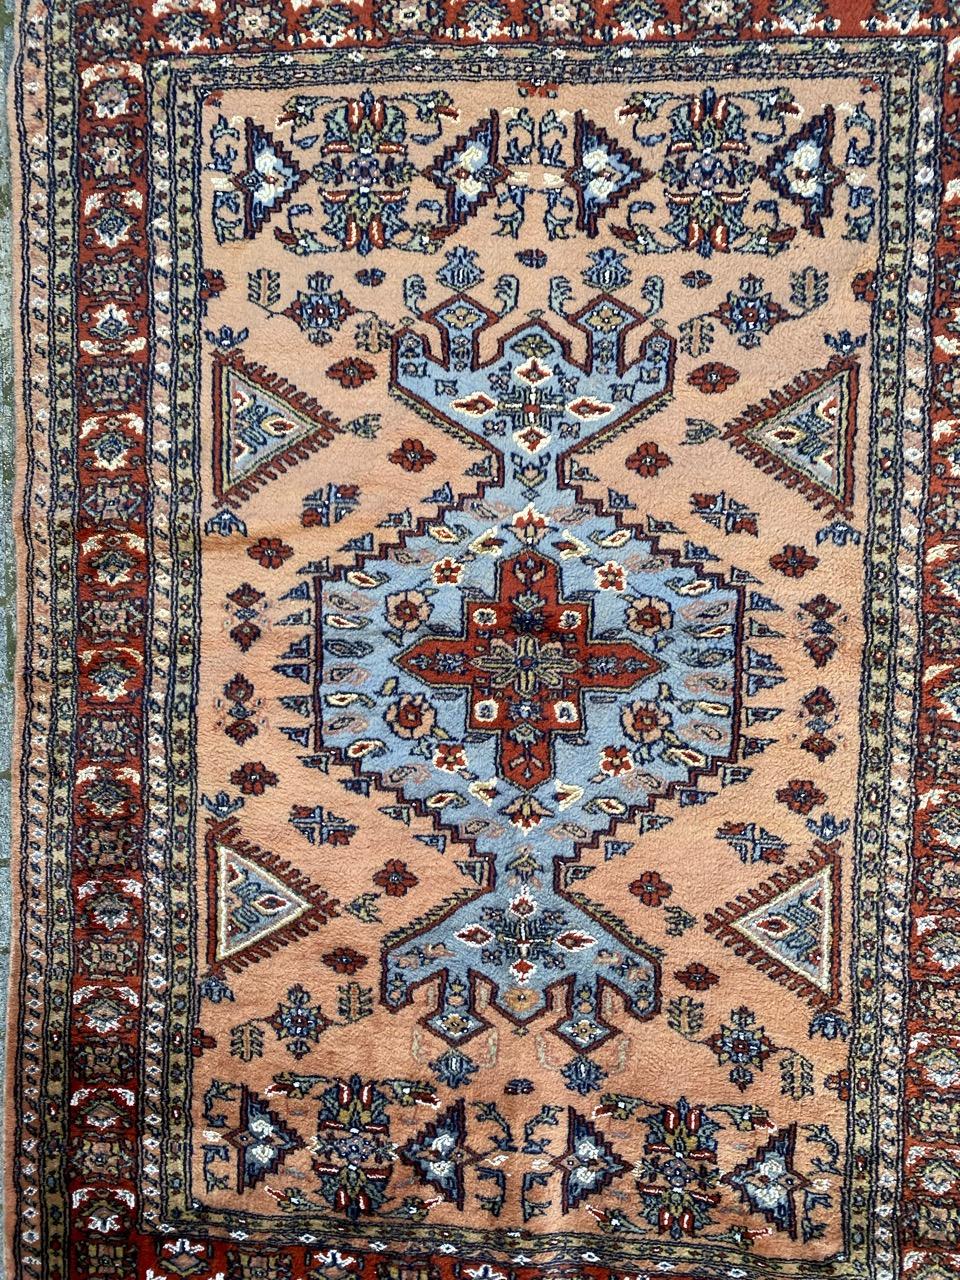 Schöner Teppich aus der Mitte des Jahrhunderts mit schönem geometrischem Design und schönen Farben, komplett handgeknüpft mit Wollsamt auf Baumwollbasis.

✨✨✨
